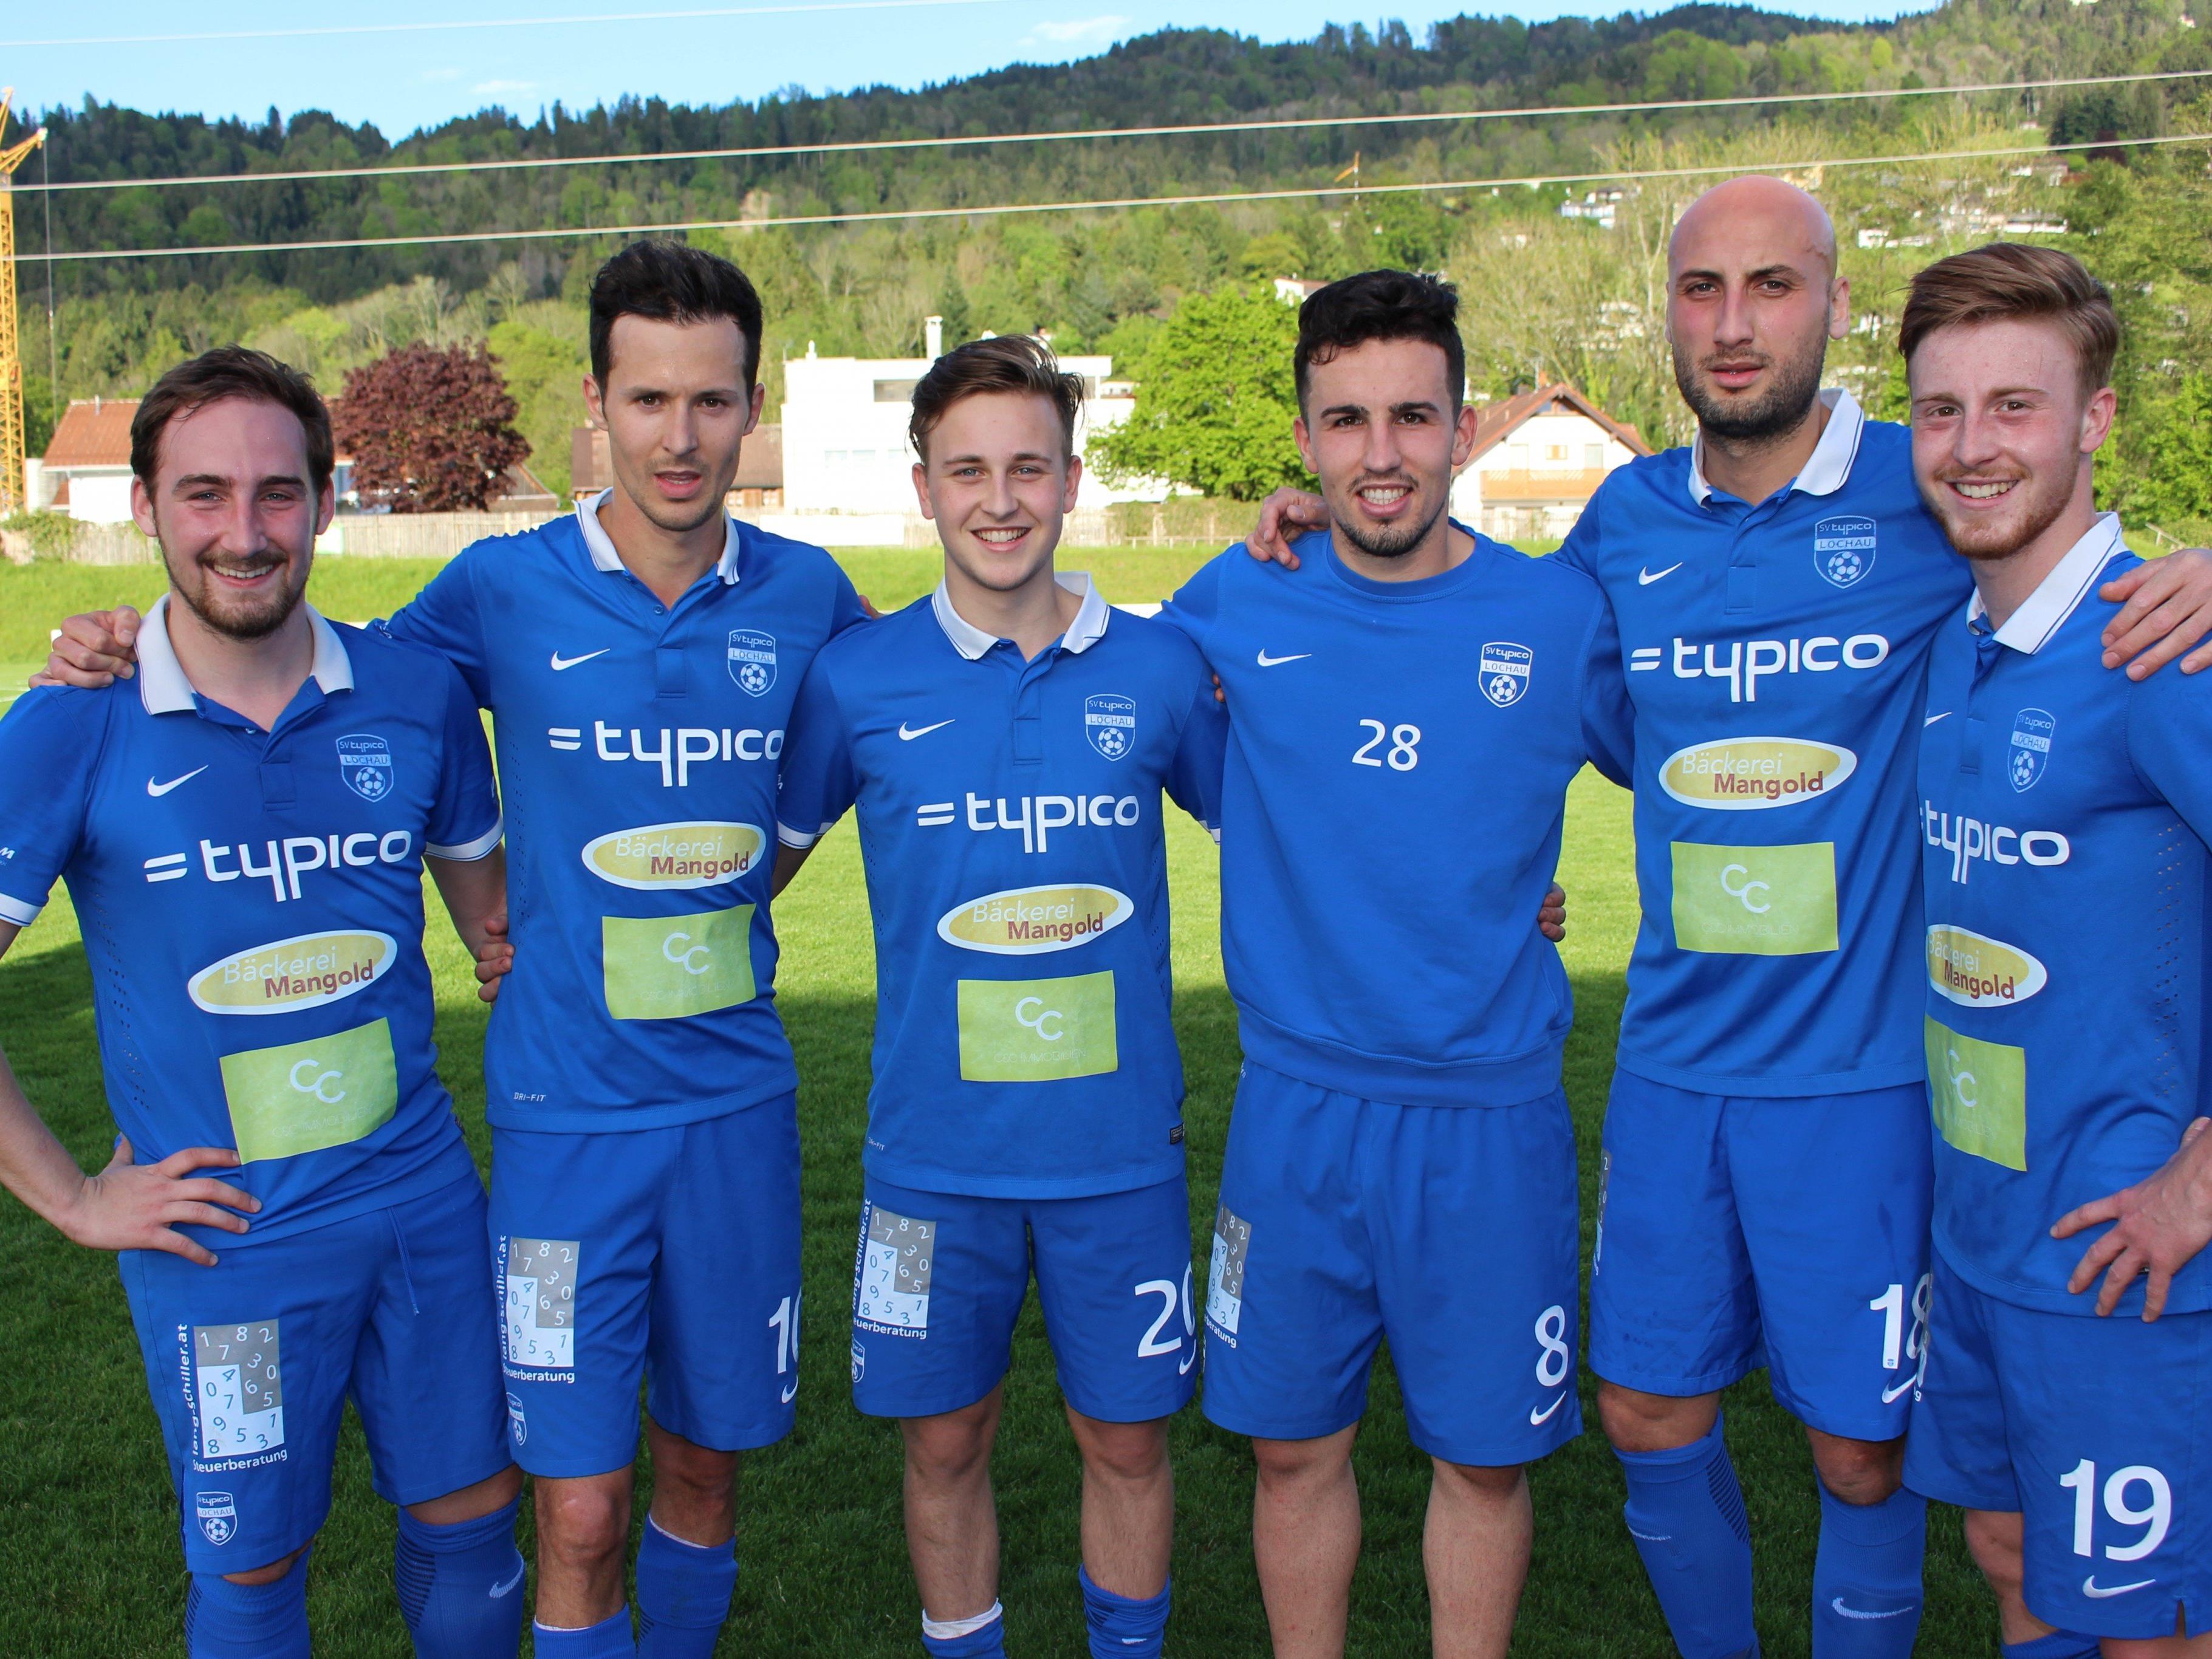 Die erfolgreichen Torschützen des SV Typico Lochau: Fabian Hämmerle (Freistoß), Fabian Fink (2), Kevin Prantl, Robin Lhotzky, Firat Özkarakaya und Patrick Prantl.